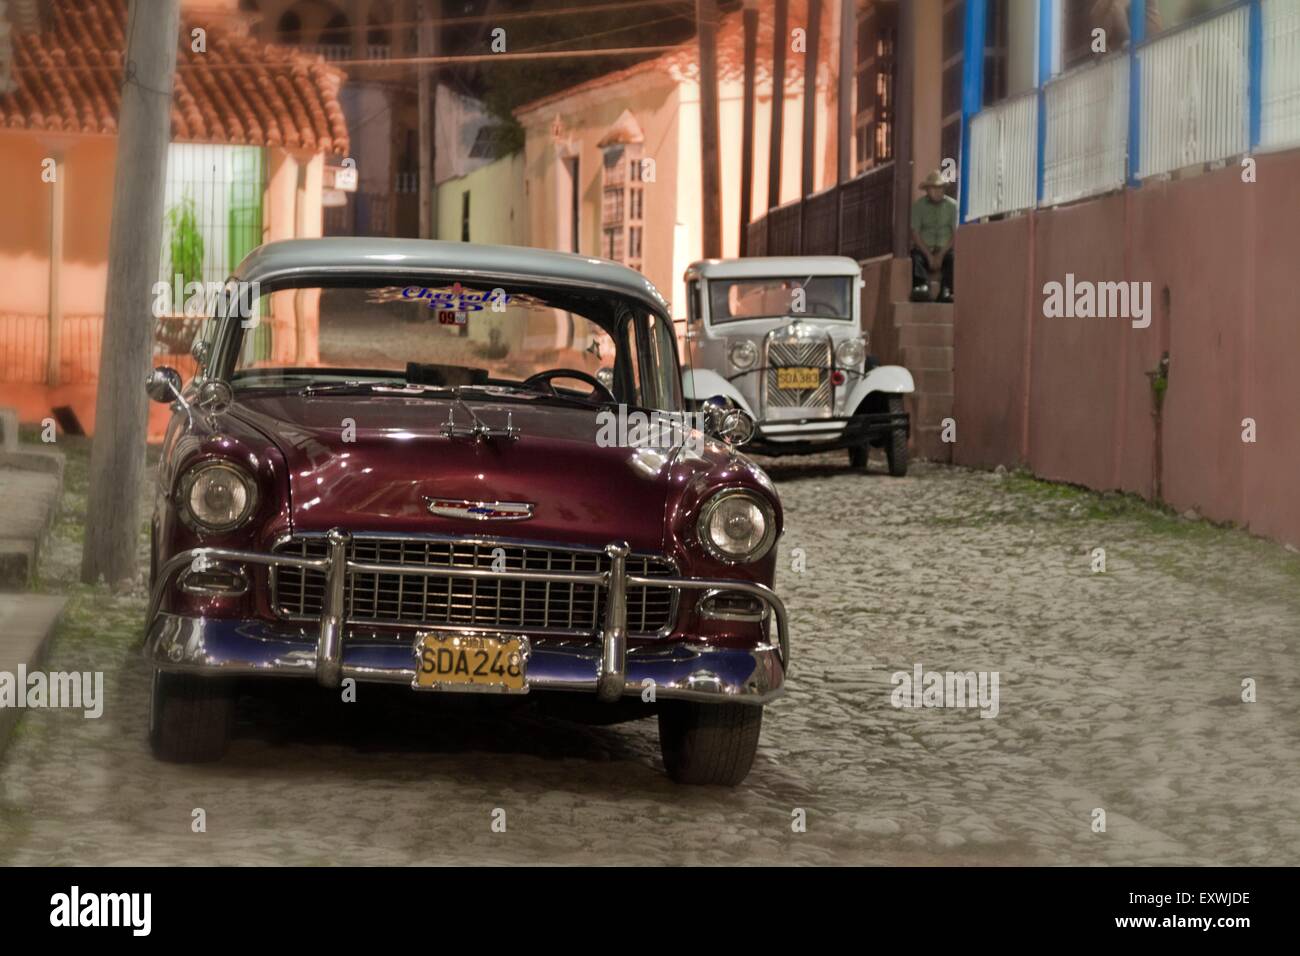 Vintage Car sur rue pavée, Trinidad, Cuba Banque D'Images